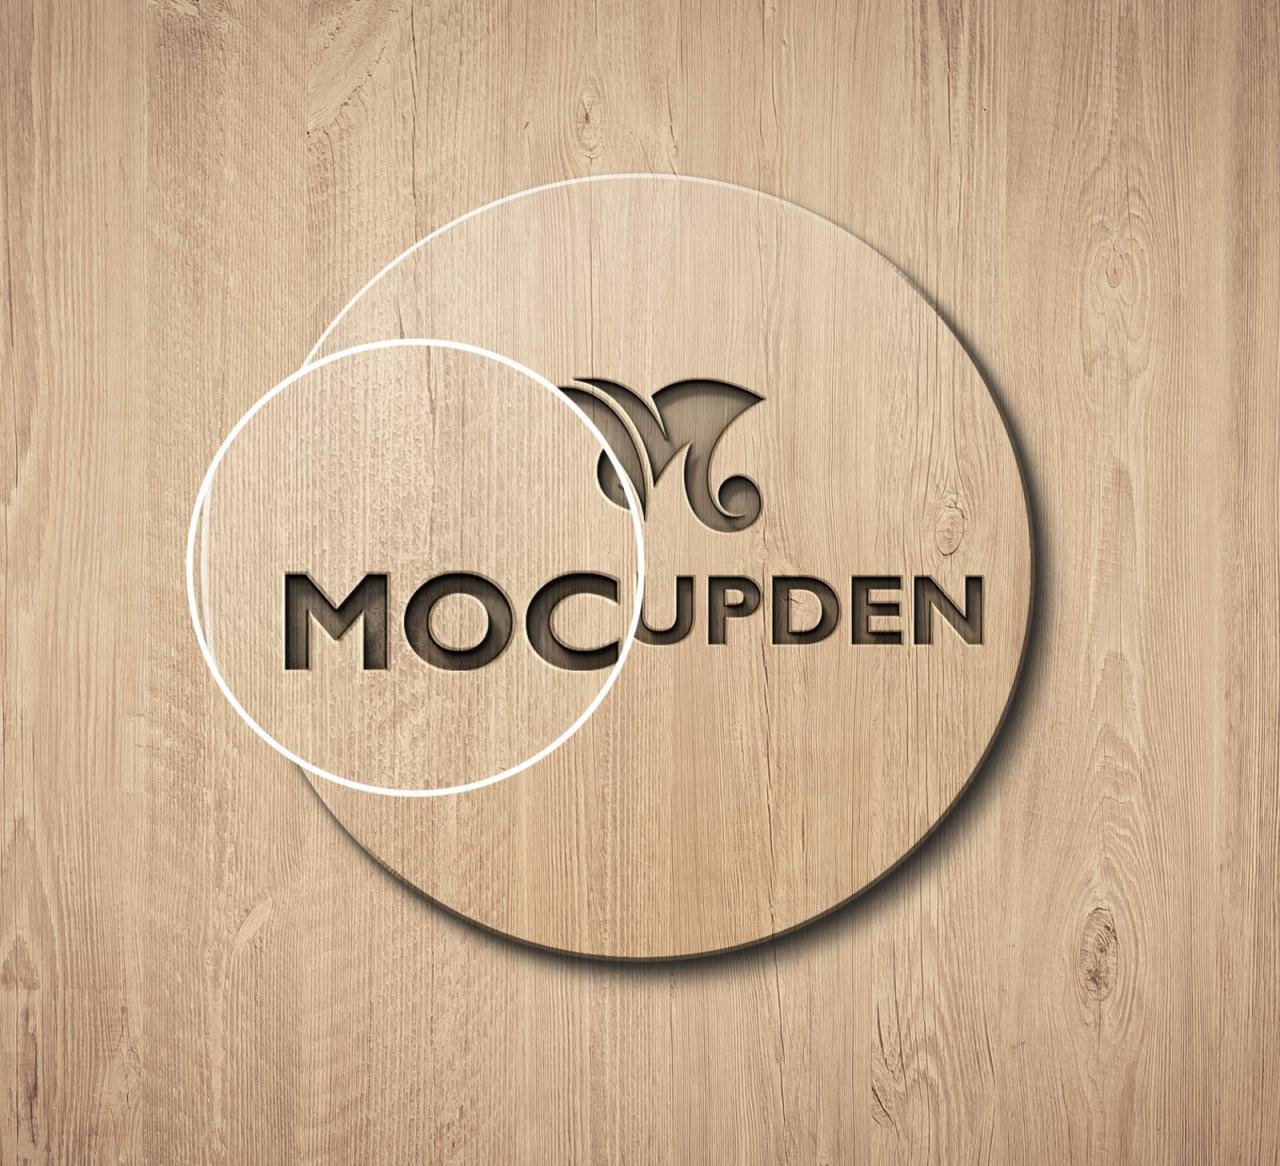 Free Mockup Design Online